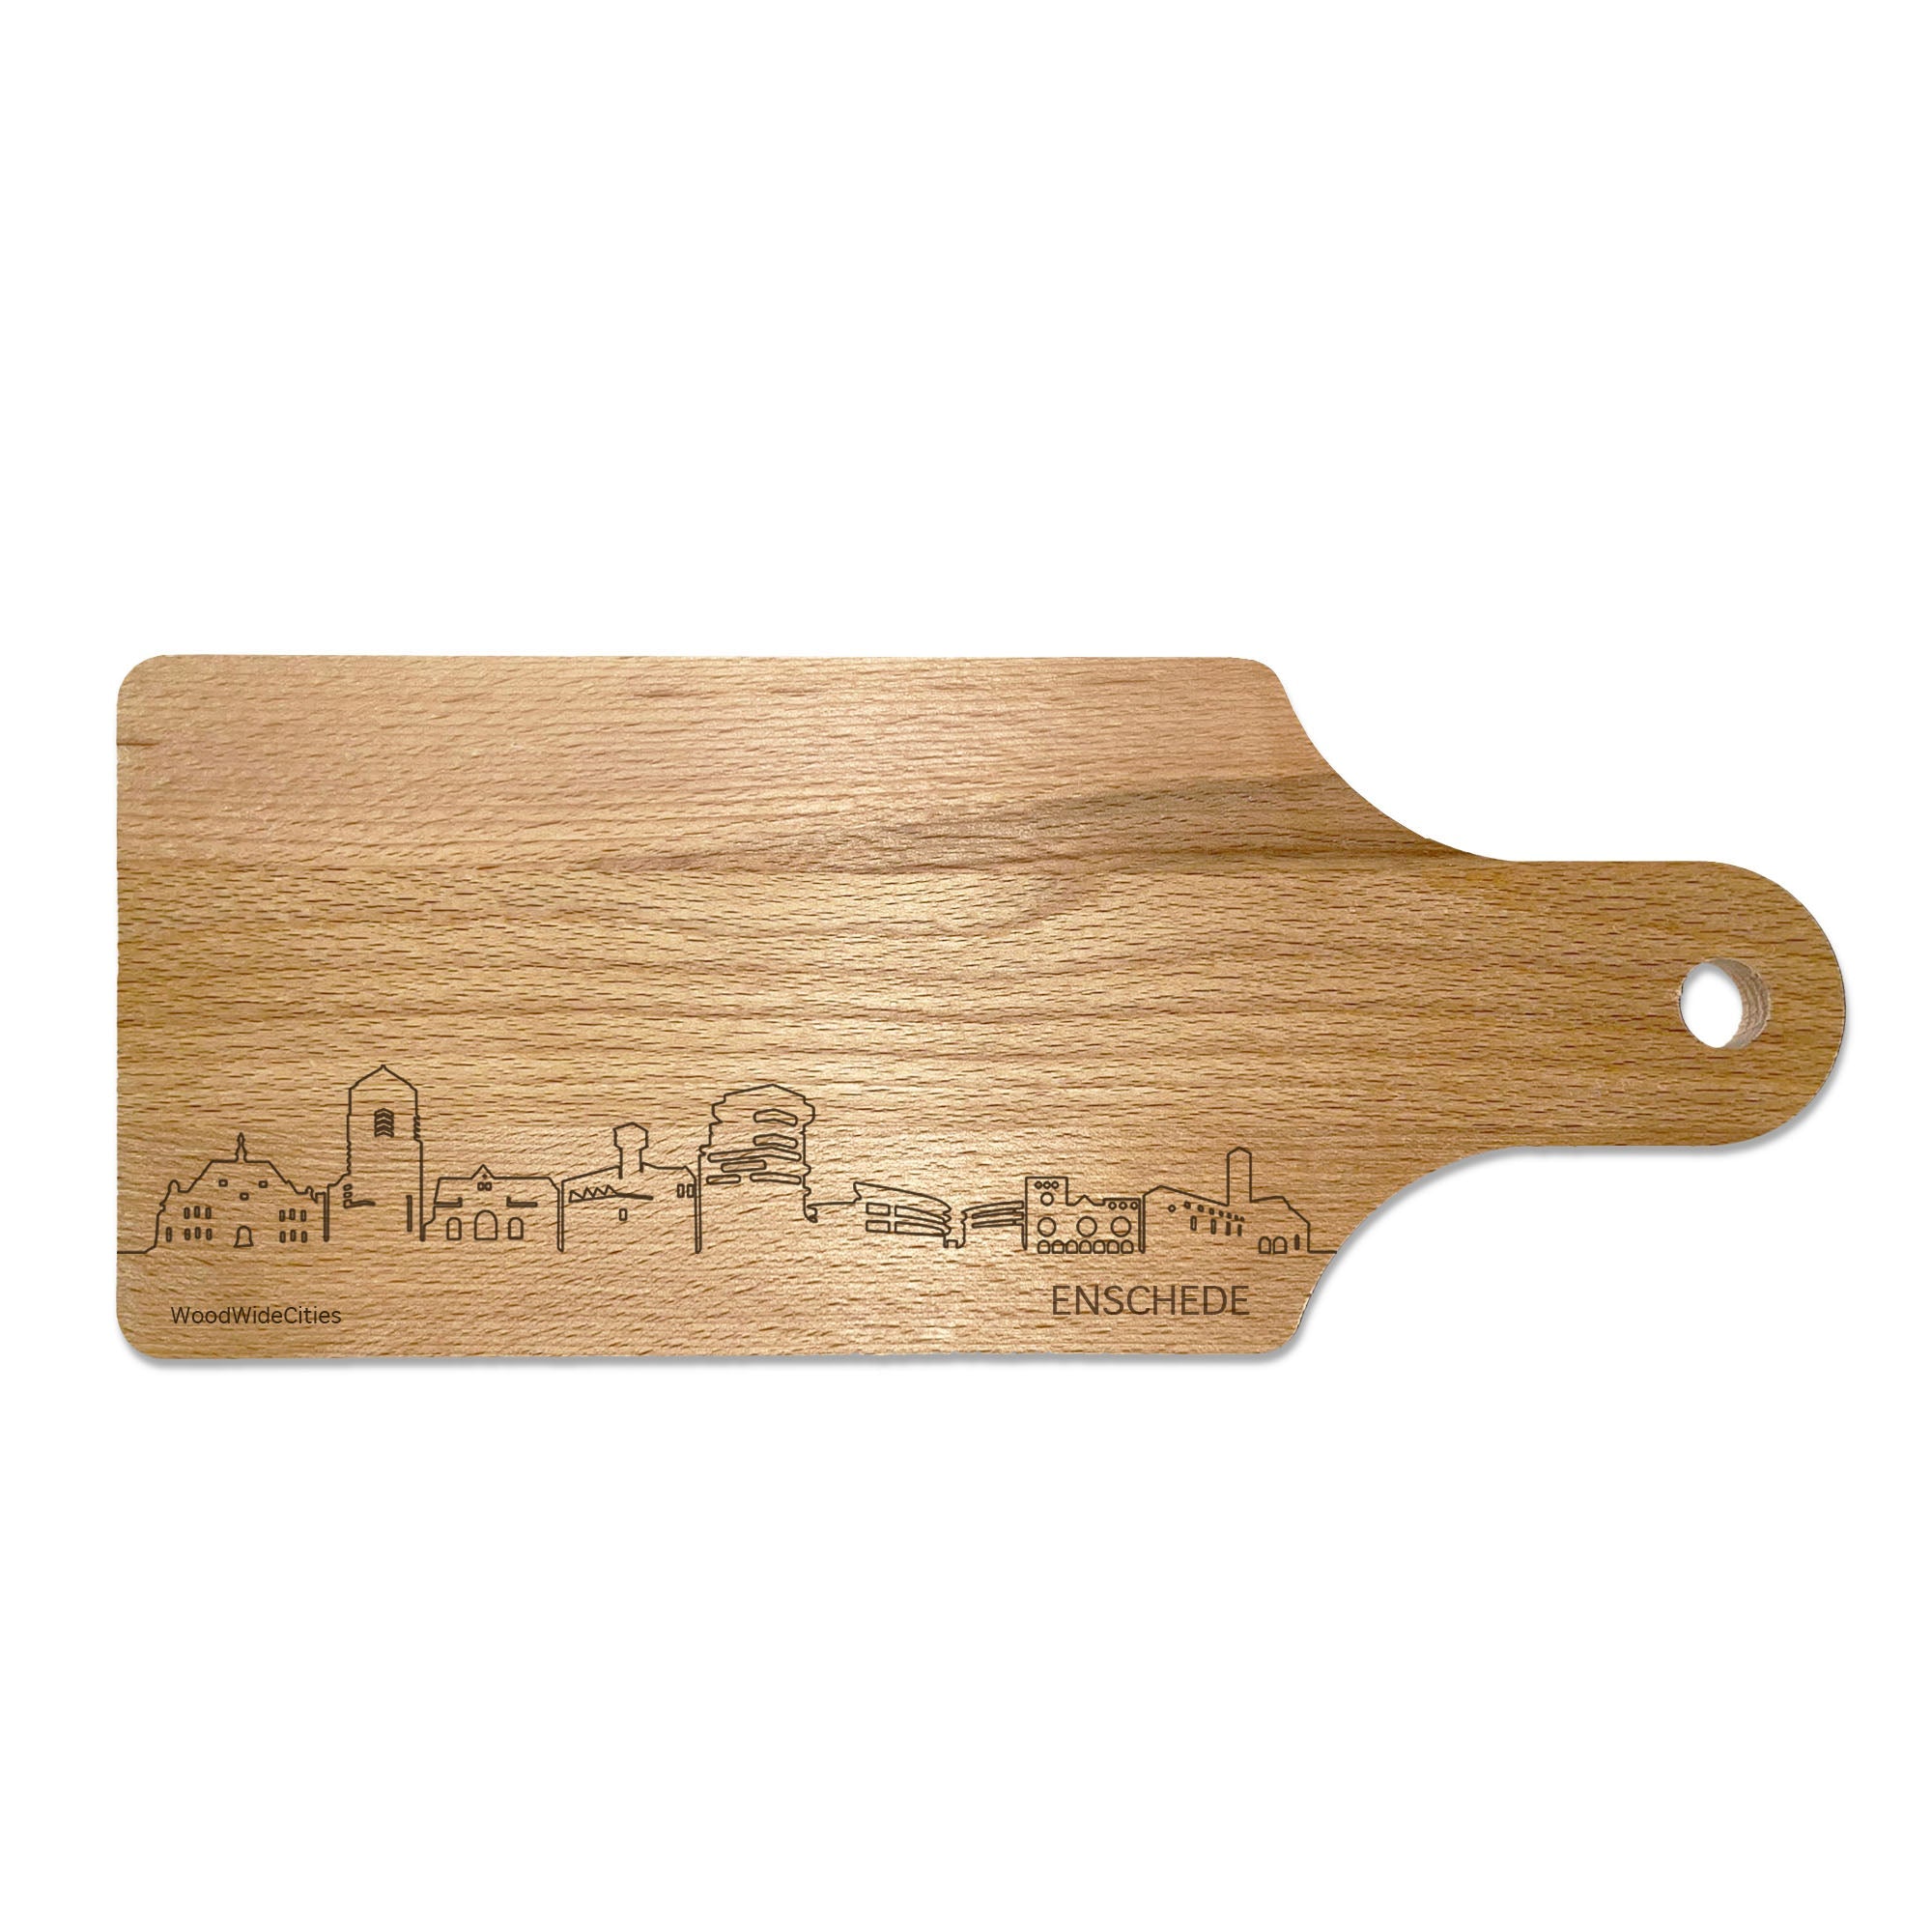 Skyline Borrelplank Enschede houten cadeau decoratie relatiegeschenk van WoodWideCities